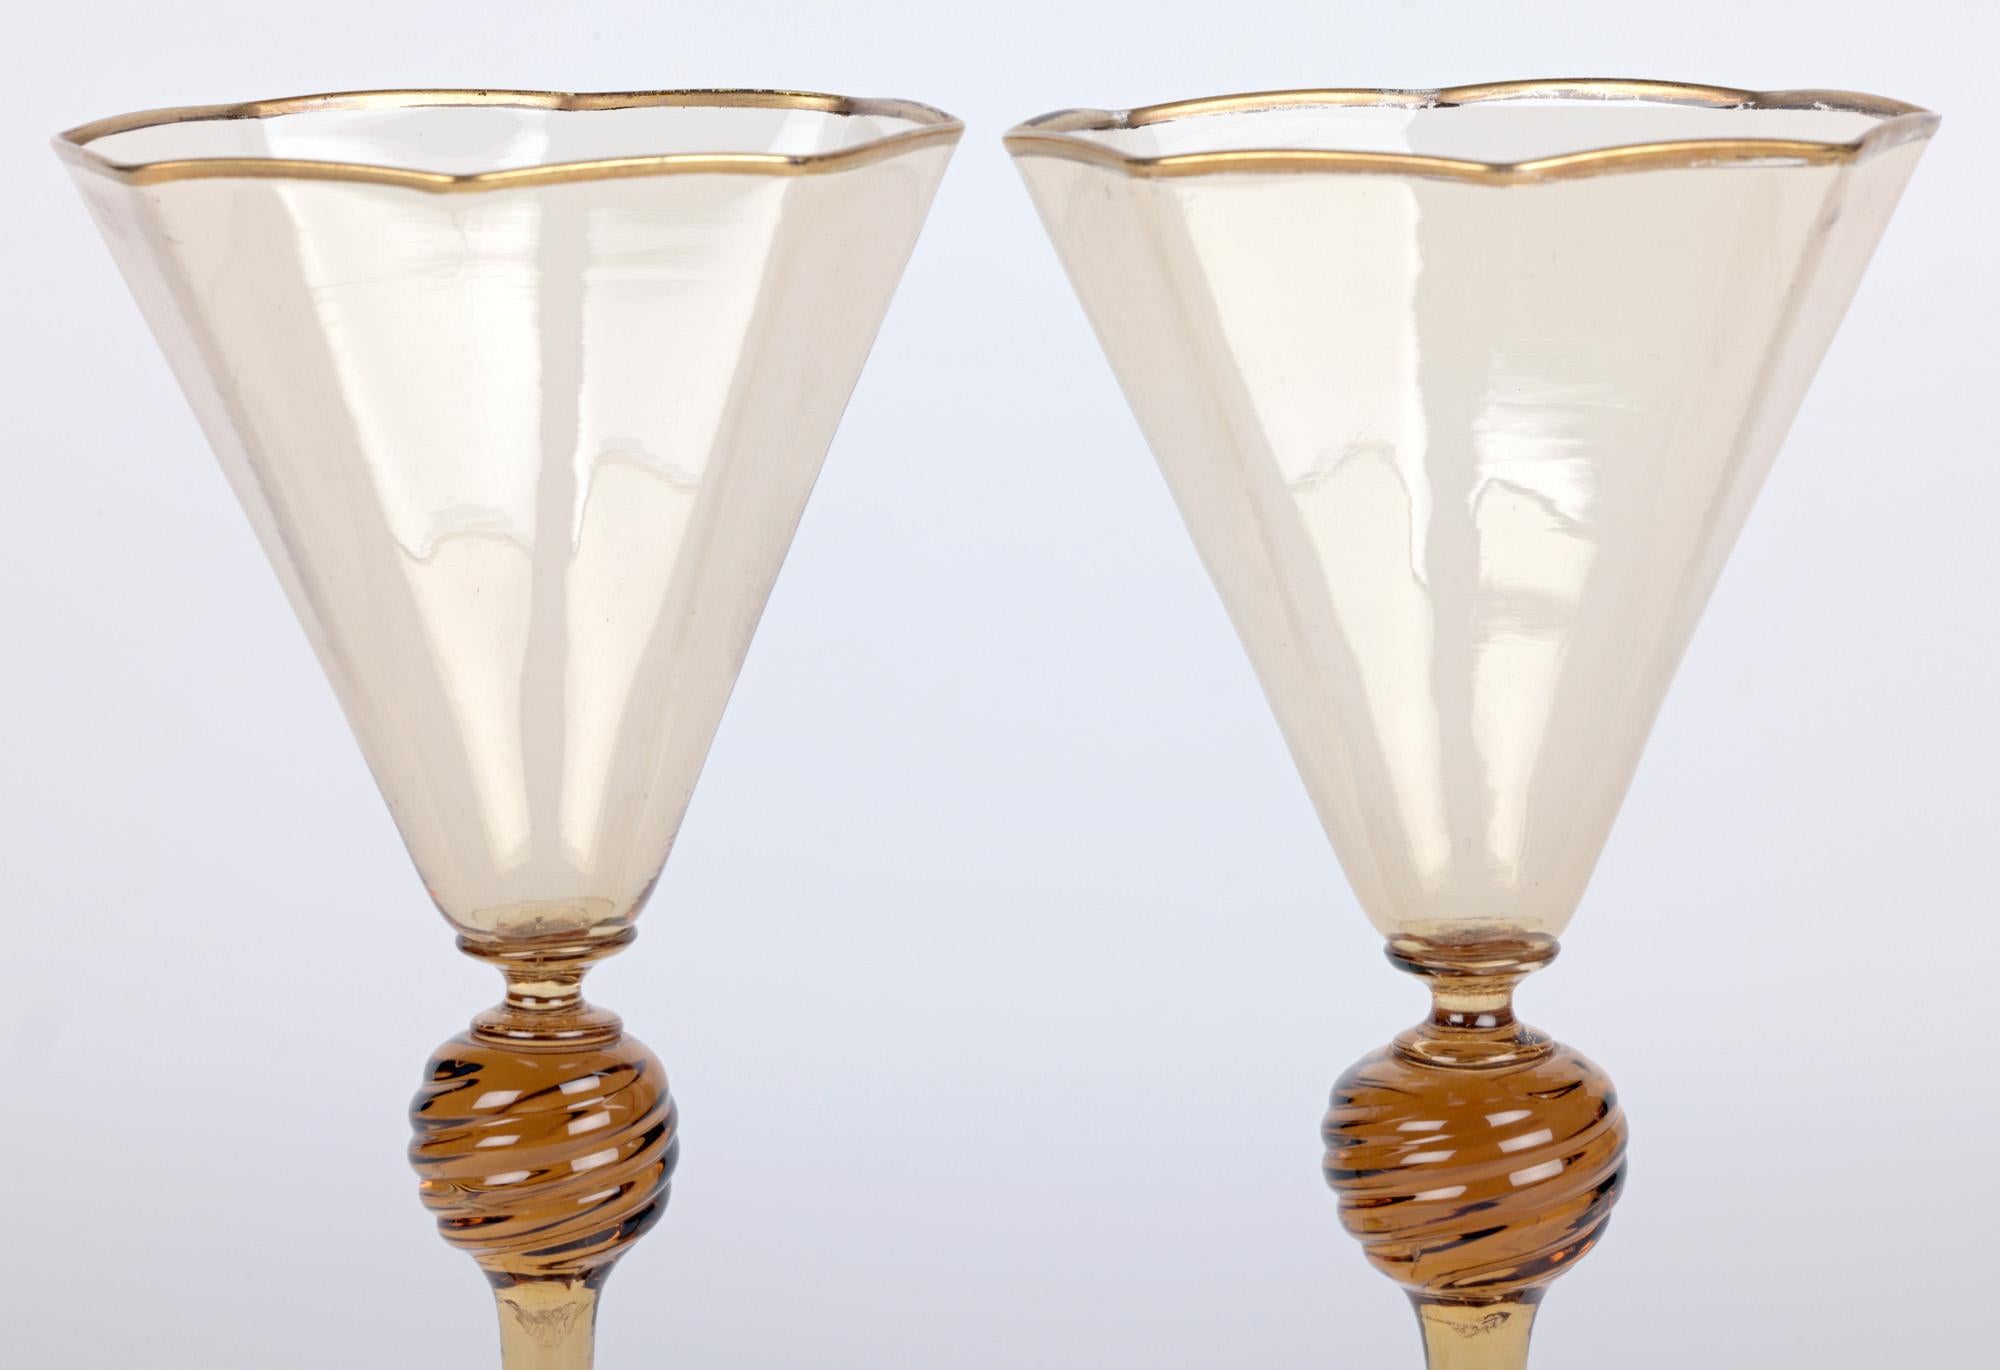 Ein sehr schönes Paar Murano MVM Cappellin bernsteinfarbene Weingläser aus der Zeit um 1925. Die Gläser haben achteckige Schalen mit vergoldetem Rand, die auf großen, gebogenen Stielen und runden Füßen mit vergoldetem Rand stehen. Die Gläser sind